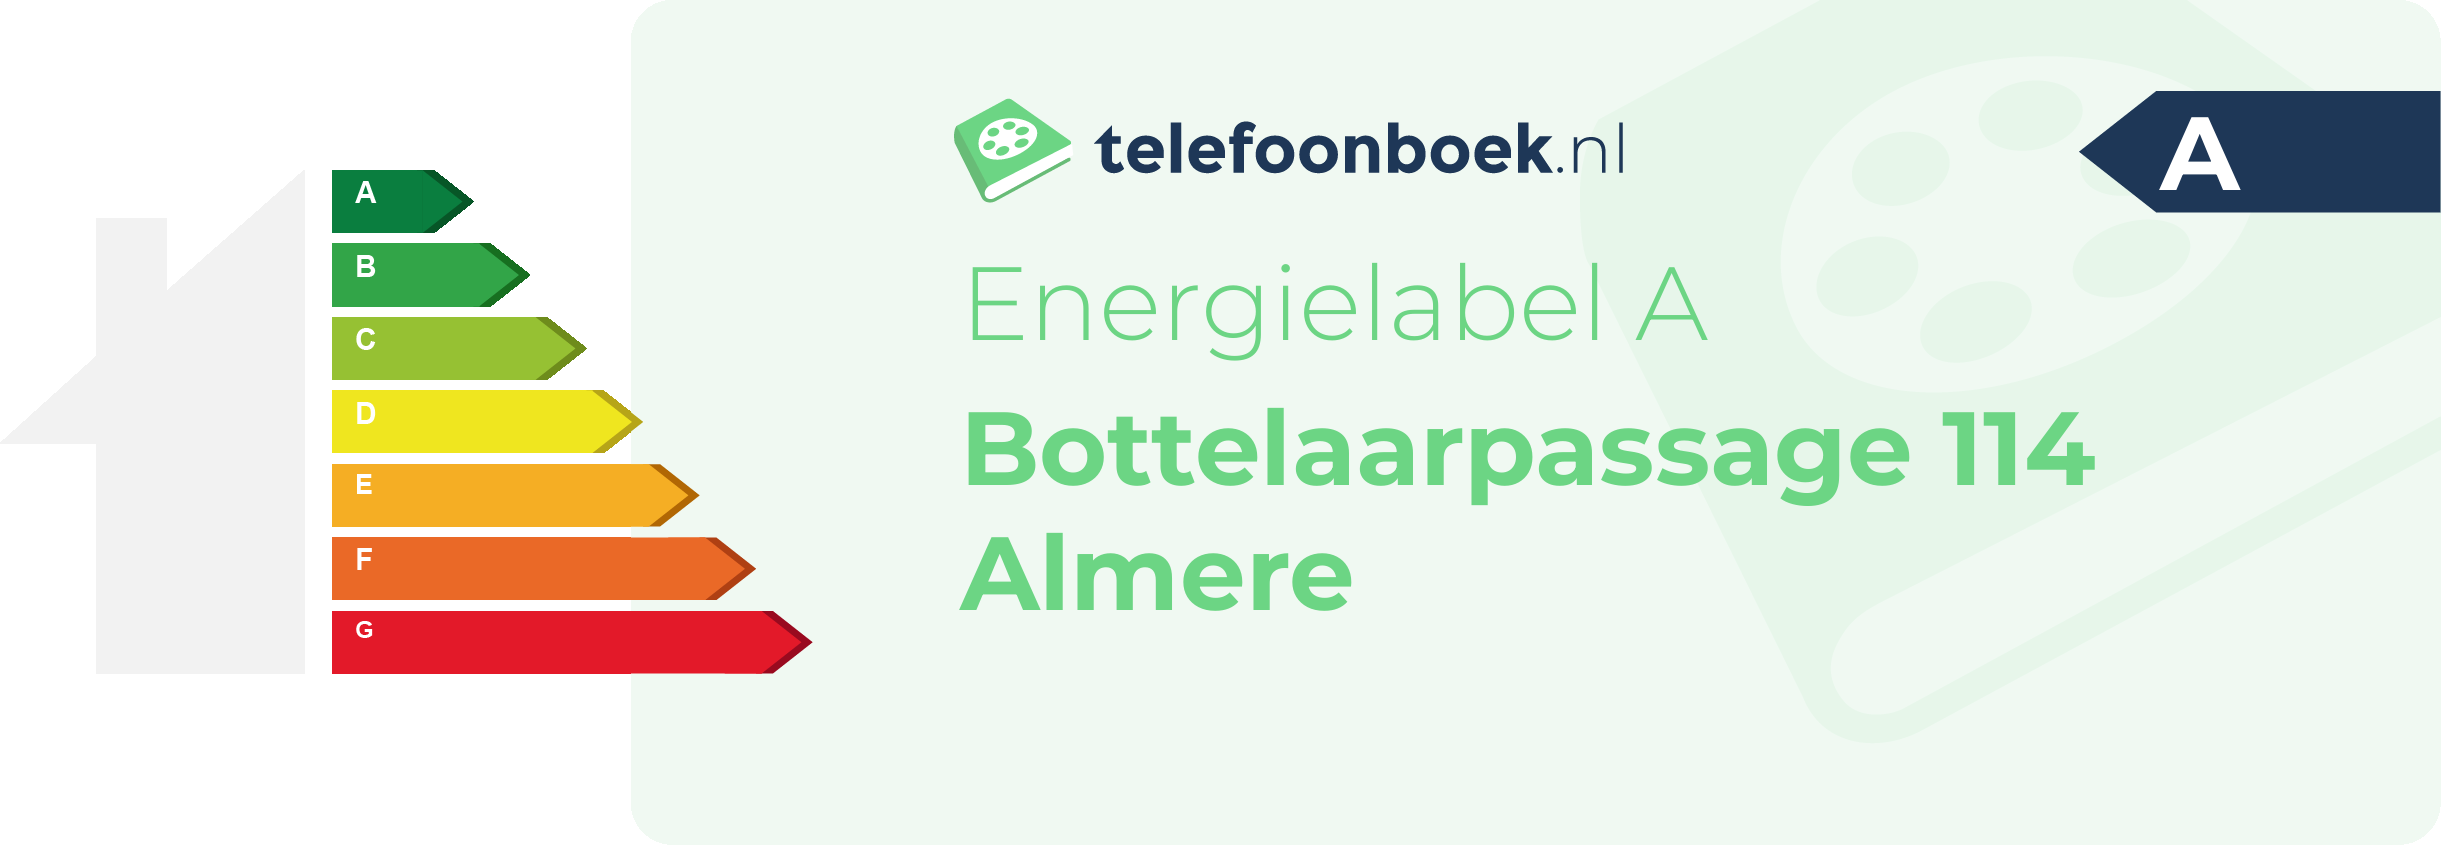 Energielabel Bottelaarpassage 114 Almere